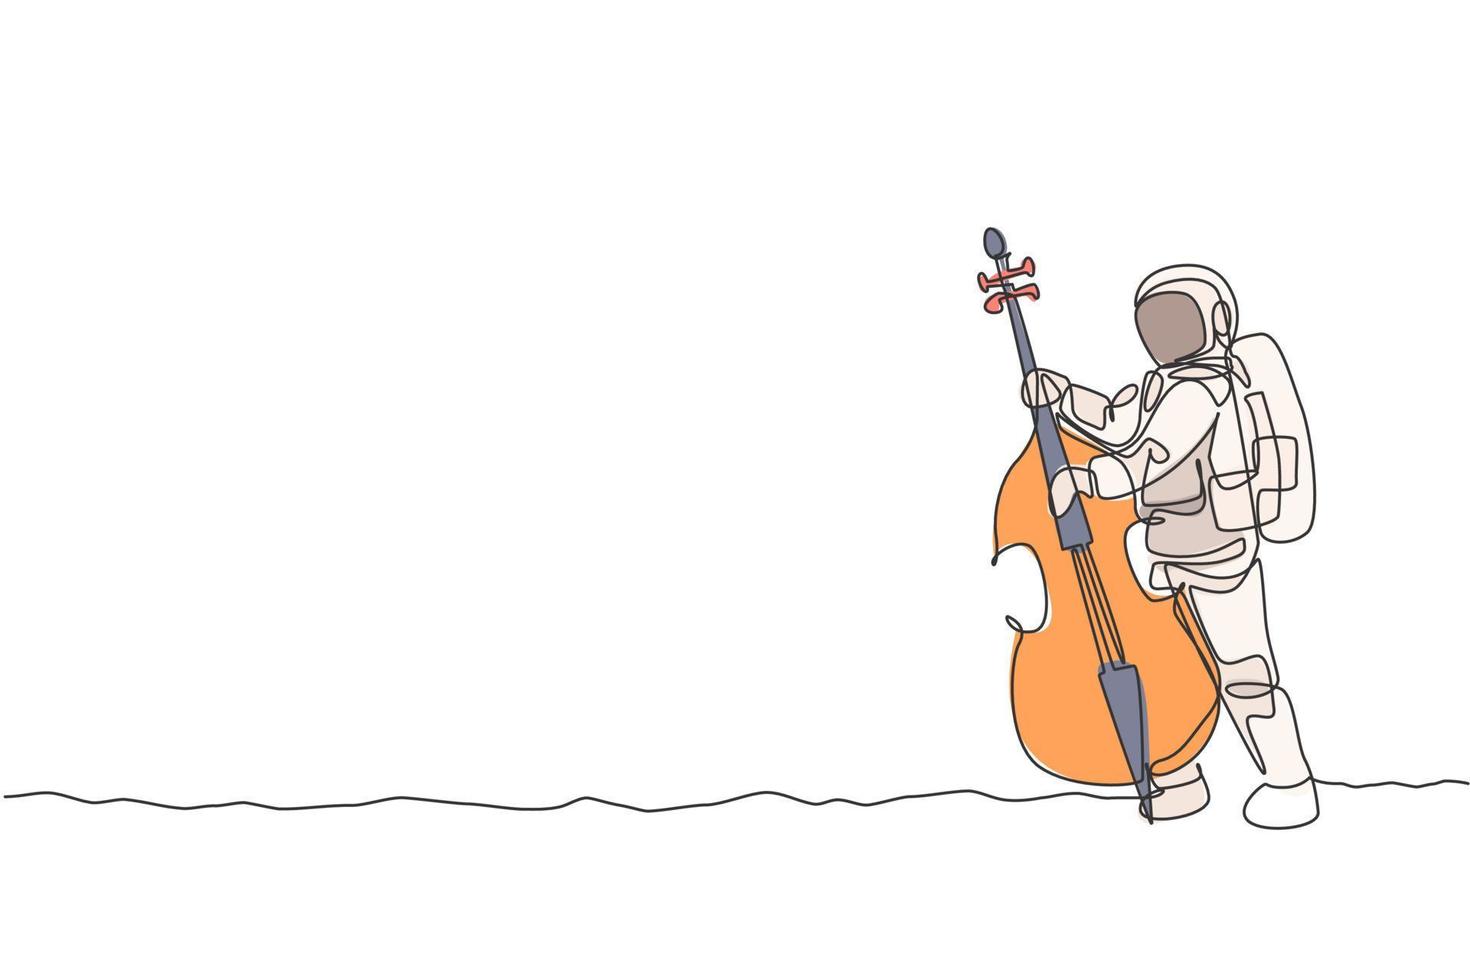 dibujo de una sola línea de violonchelista astronauta tocando el instrumento musical de violonchelo en la ilustración de vector de superficie lunar. cartel de concierto de música con concepto de astronauta espacial. diseño moderno de dibujo de línea continua